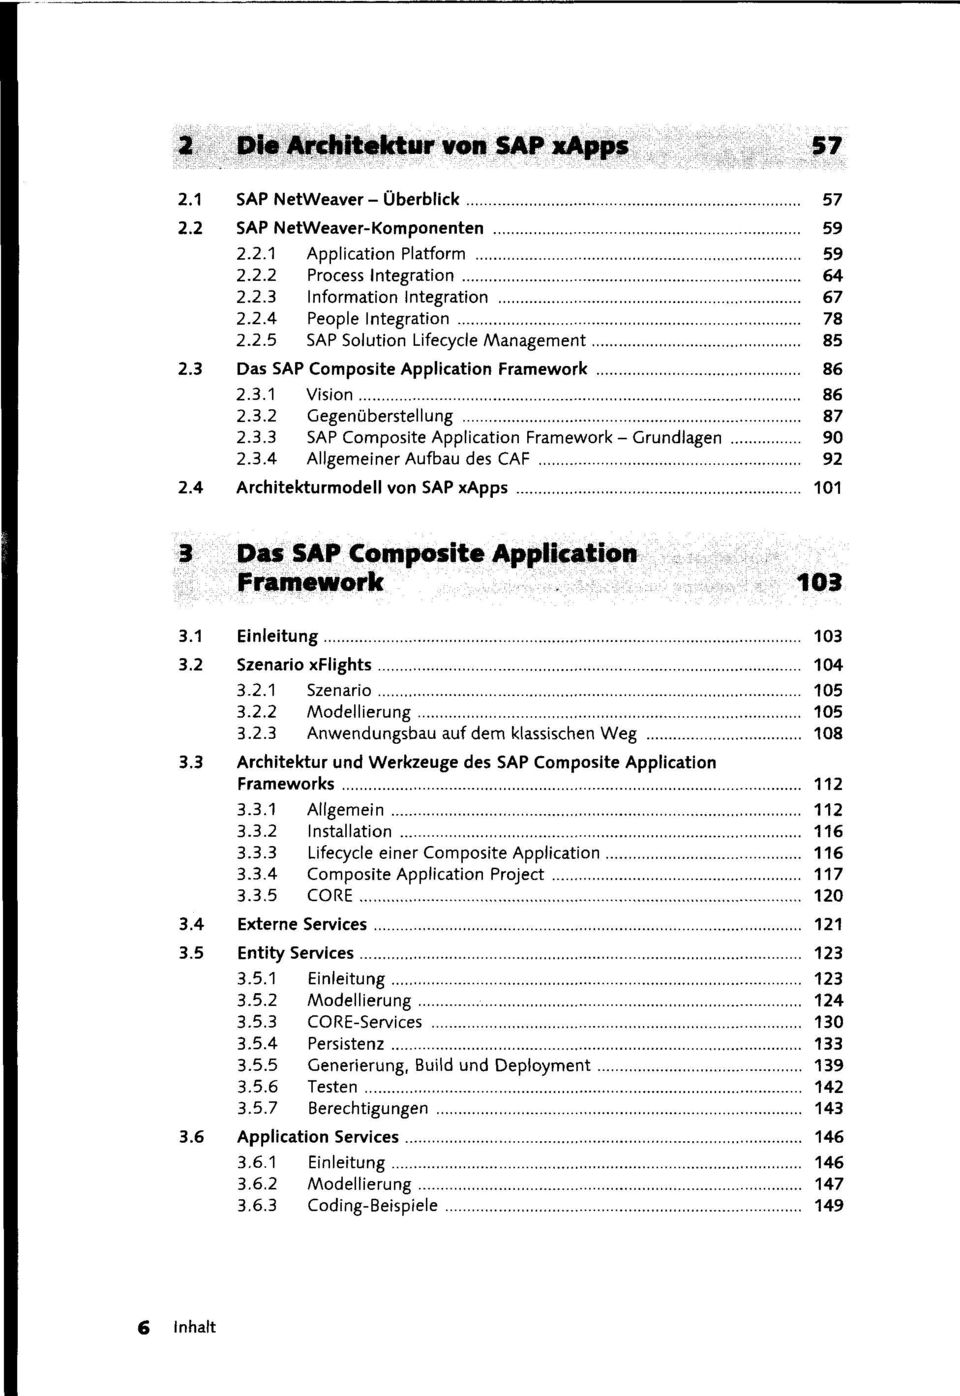 4 Architekturmodell von SAP xapps 101 3 Das SAP Composite Application Framework 103 3.1 Einleitung 103 3.2 Szenario xflights 104 3.2.1 Szenario 105 3.2.2 Modellierung 105 3.2.3 Anwendungsbau auf dem klassischen Weg 108 3.